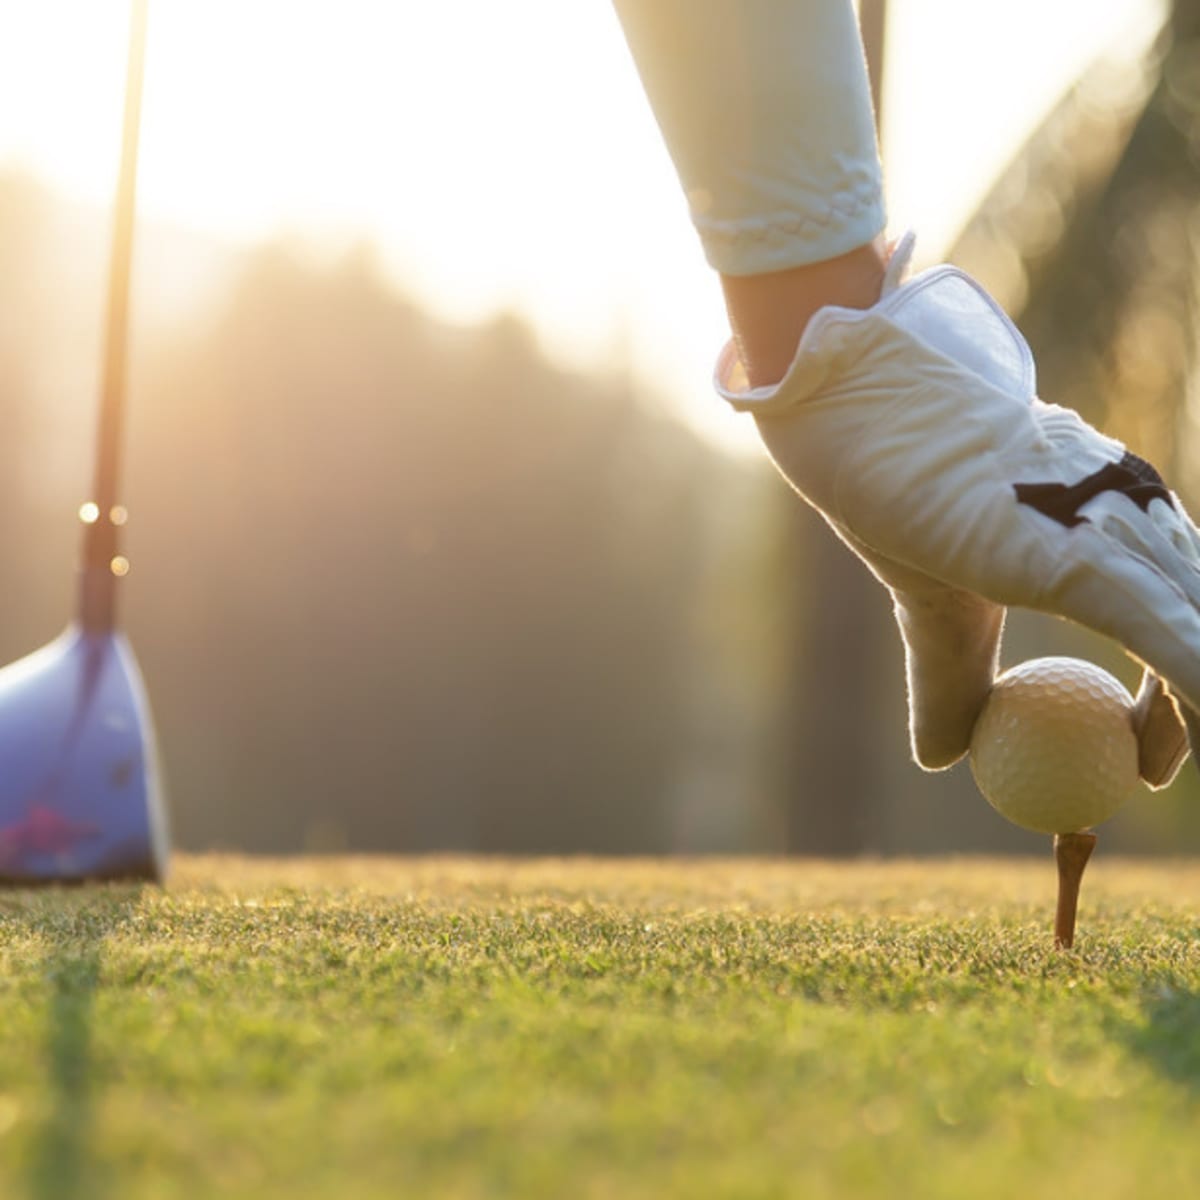 Our favorite resort golf wear, Golf Equipment: Clubs, Balls, Bags